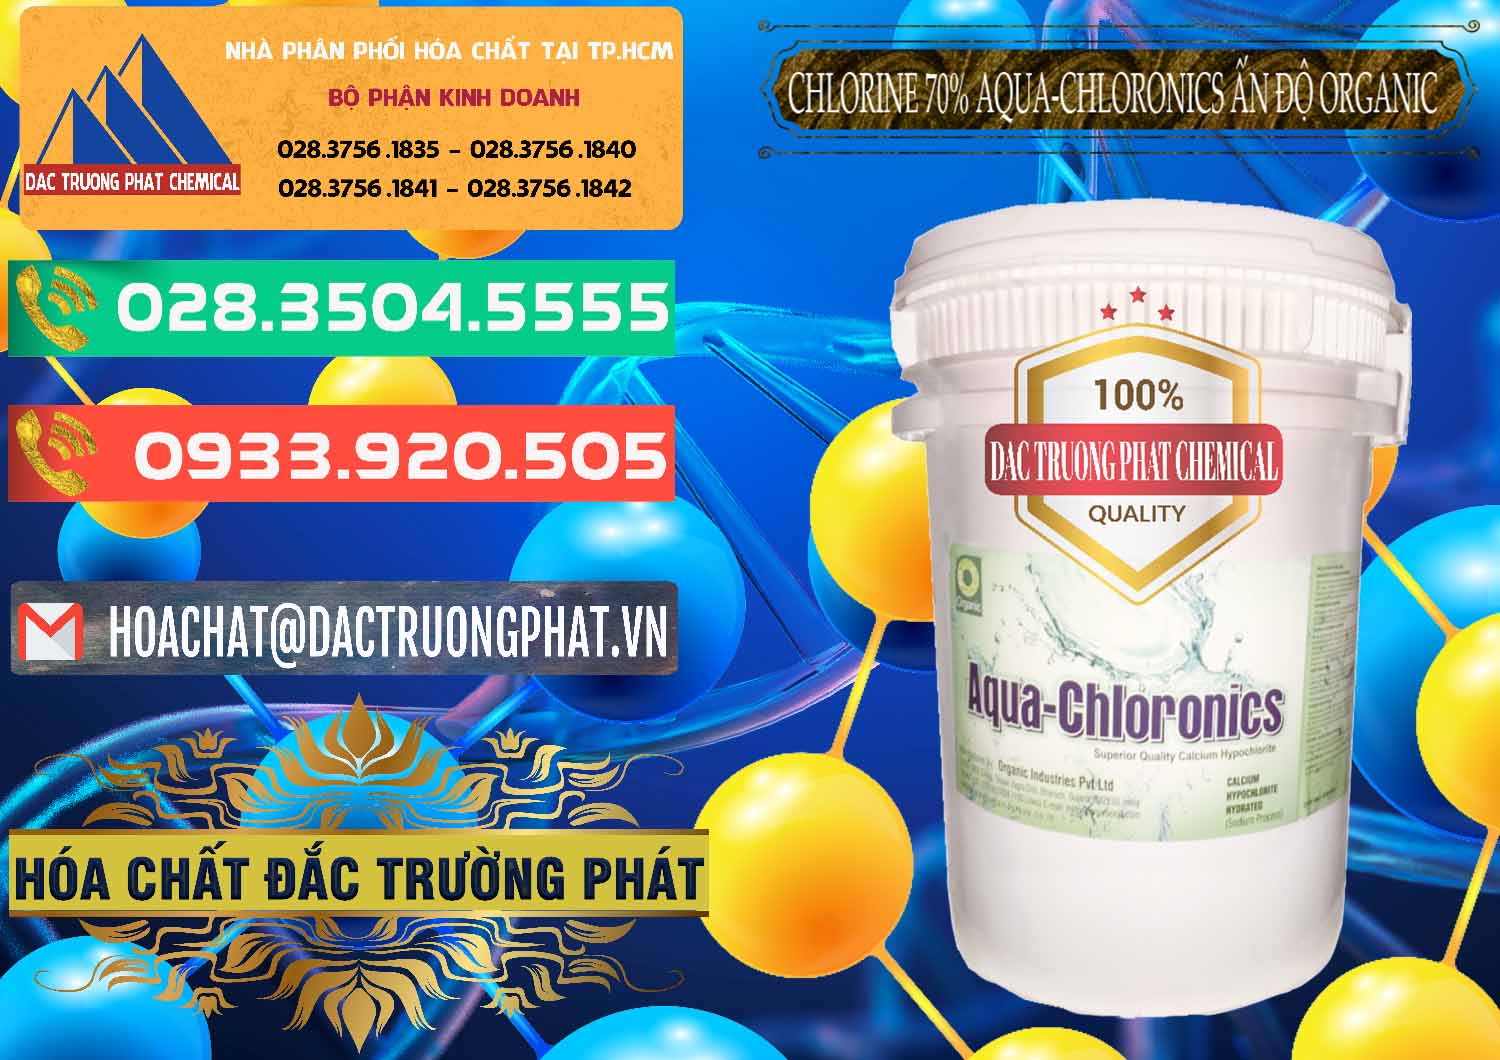 Cty chuyên cung cấp & bán Chlorine – Clorin 70% Aqua-Chloronics Ấn Độ Organic India - 0211 - Nơi chuyên cung cấp ( kinh doanh ) hóa chất tại TP.HCM - congtyhoachat.com.vn